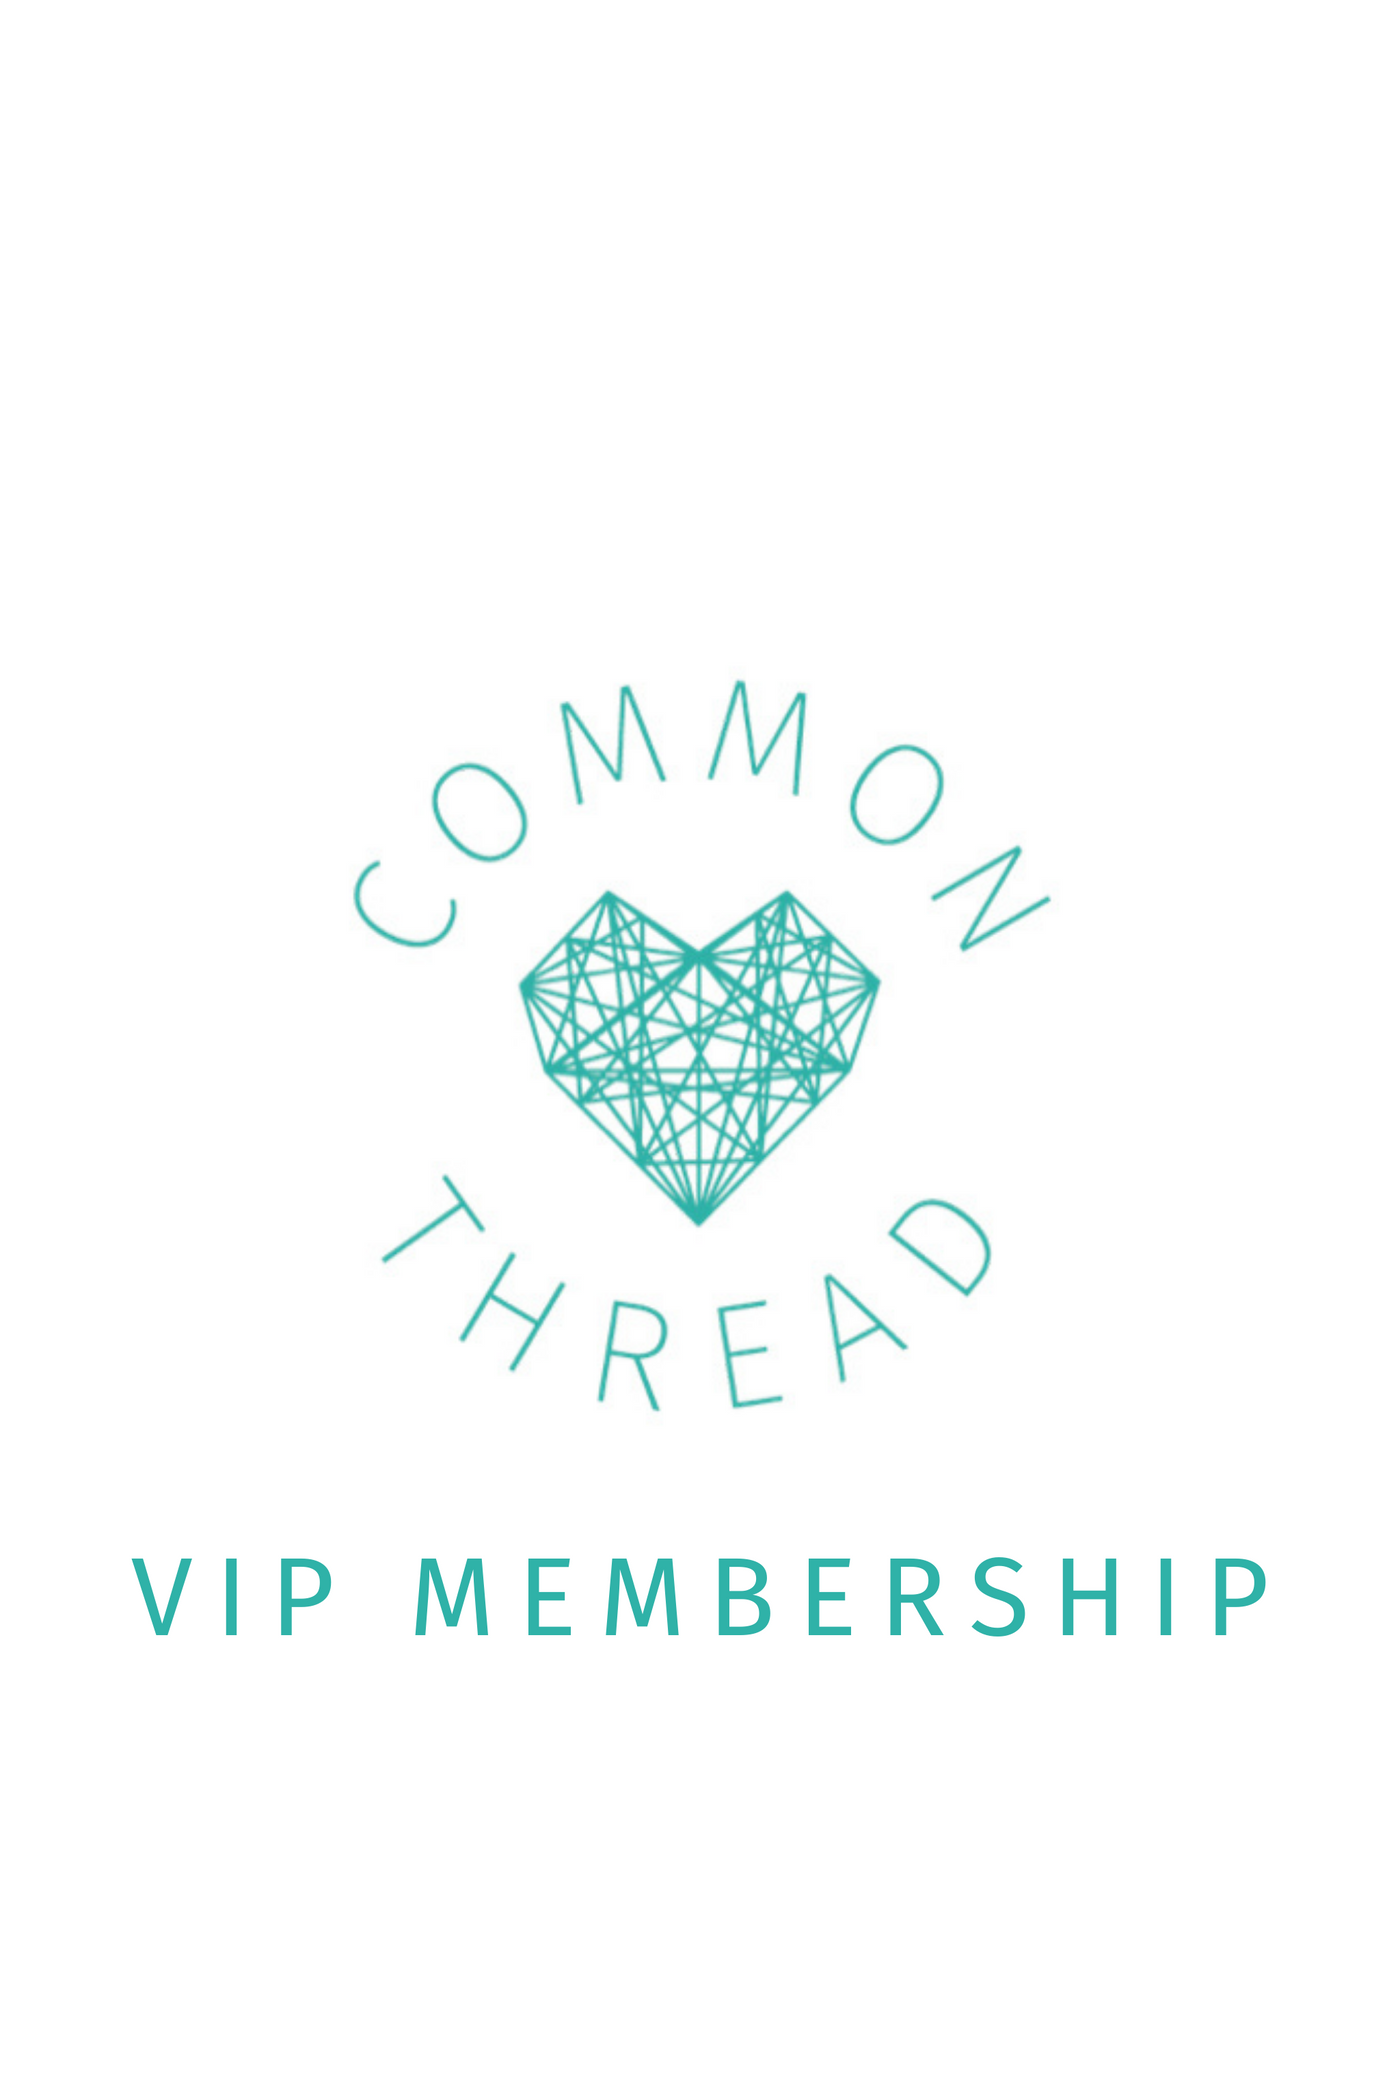 1 Year VIP Membership